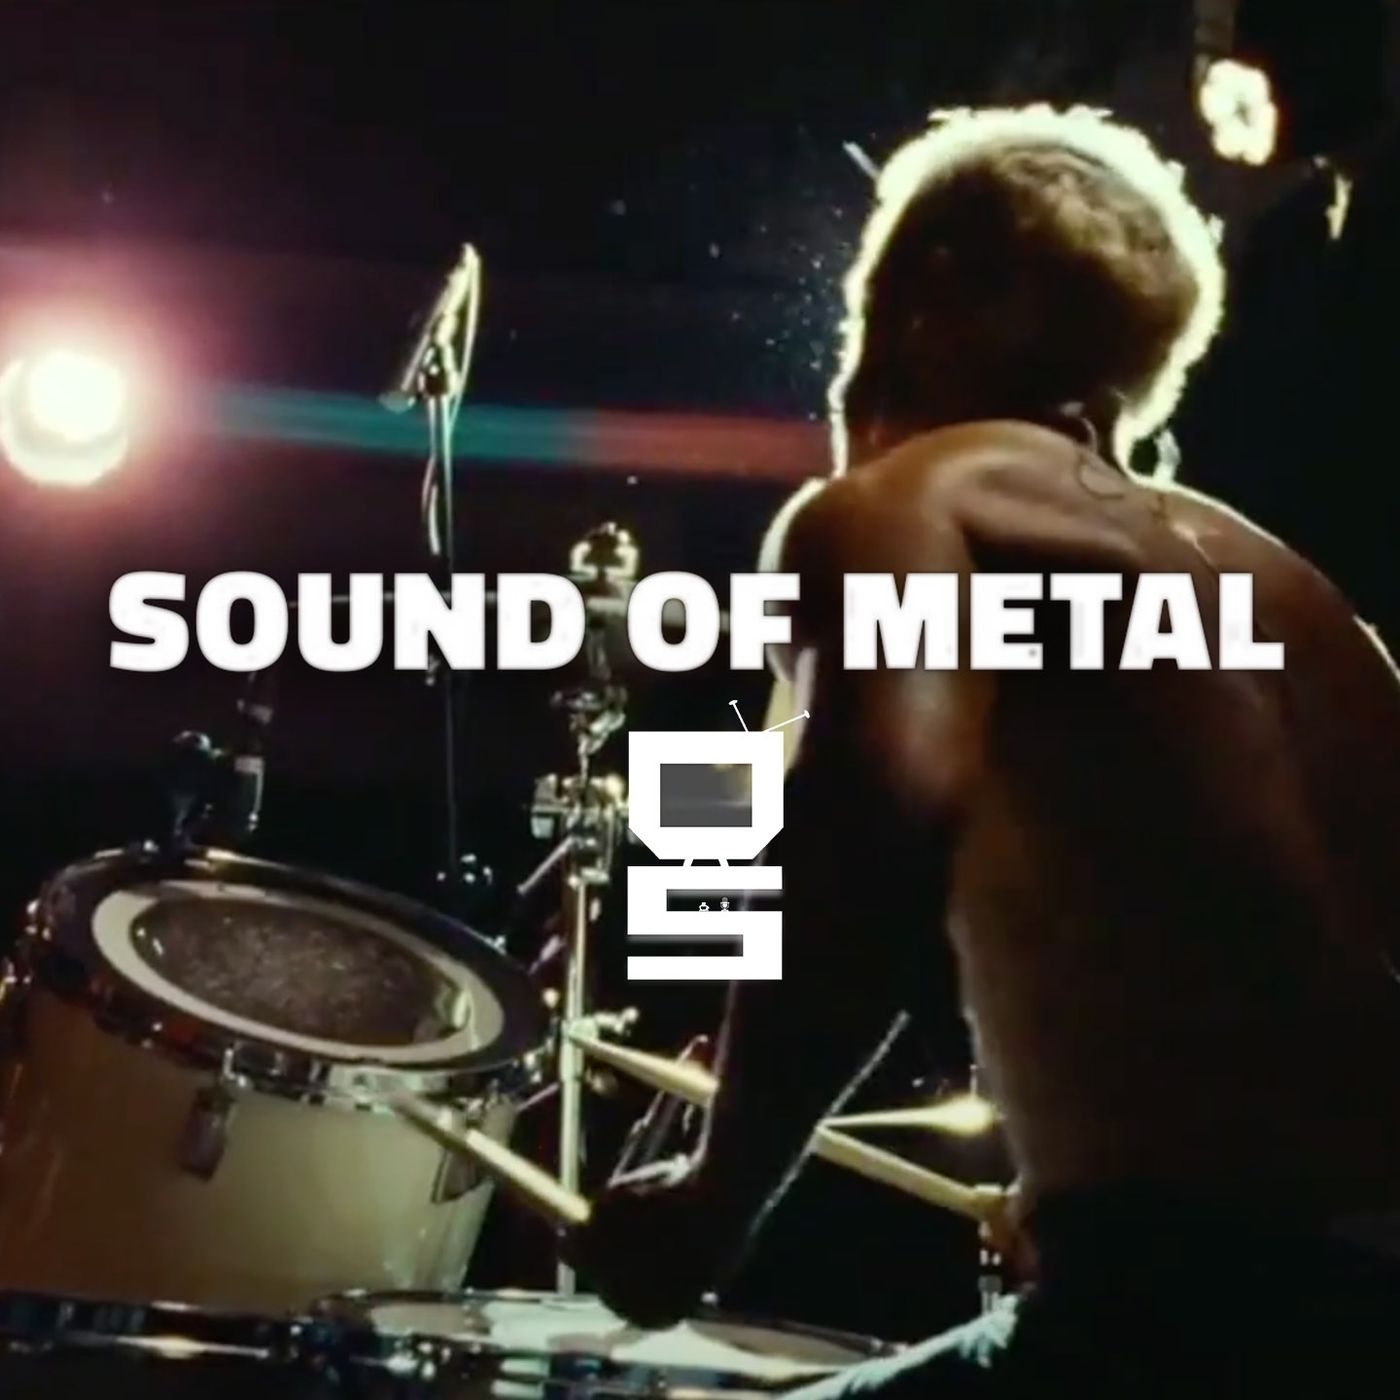 Sound of Metal - Film introspettivo o il solito drama?